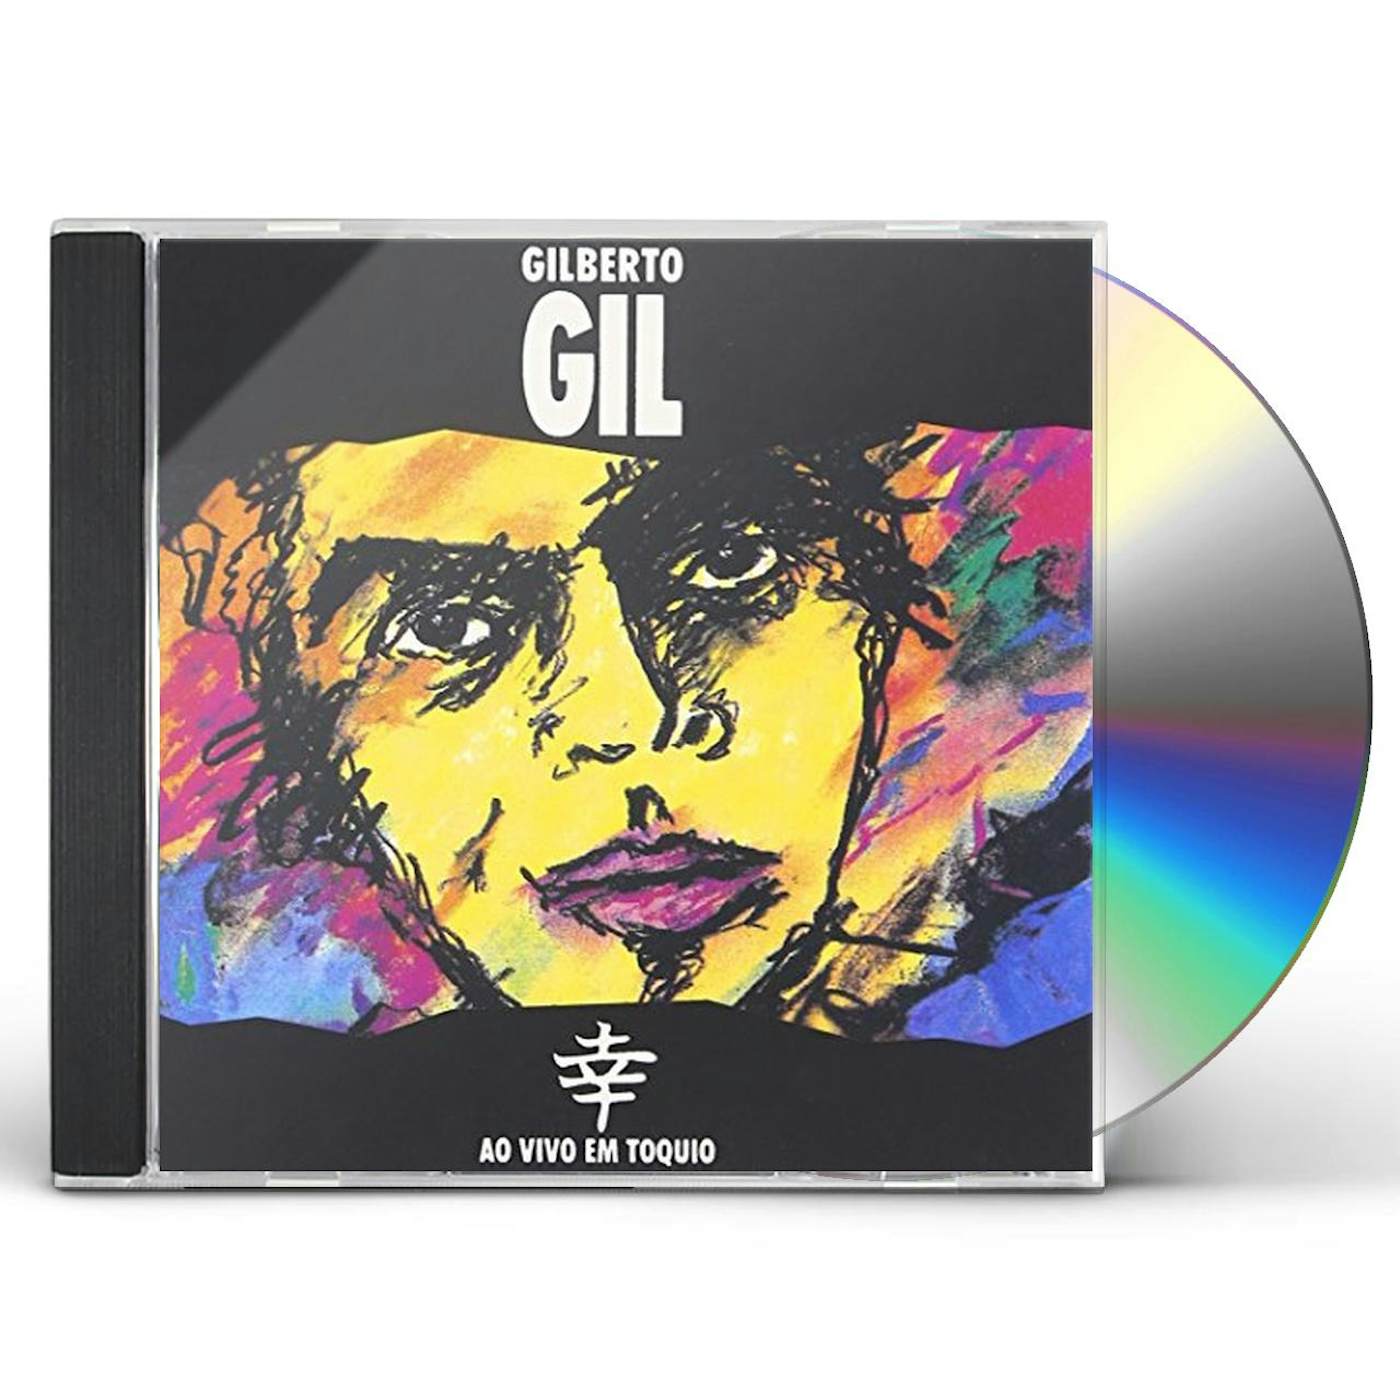 Gilberto Gil AO VIVO EM TOQUIO CD